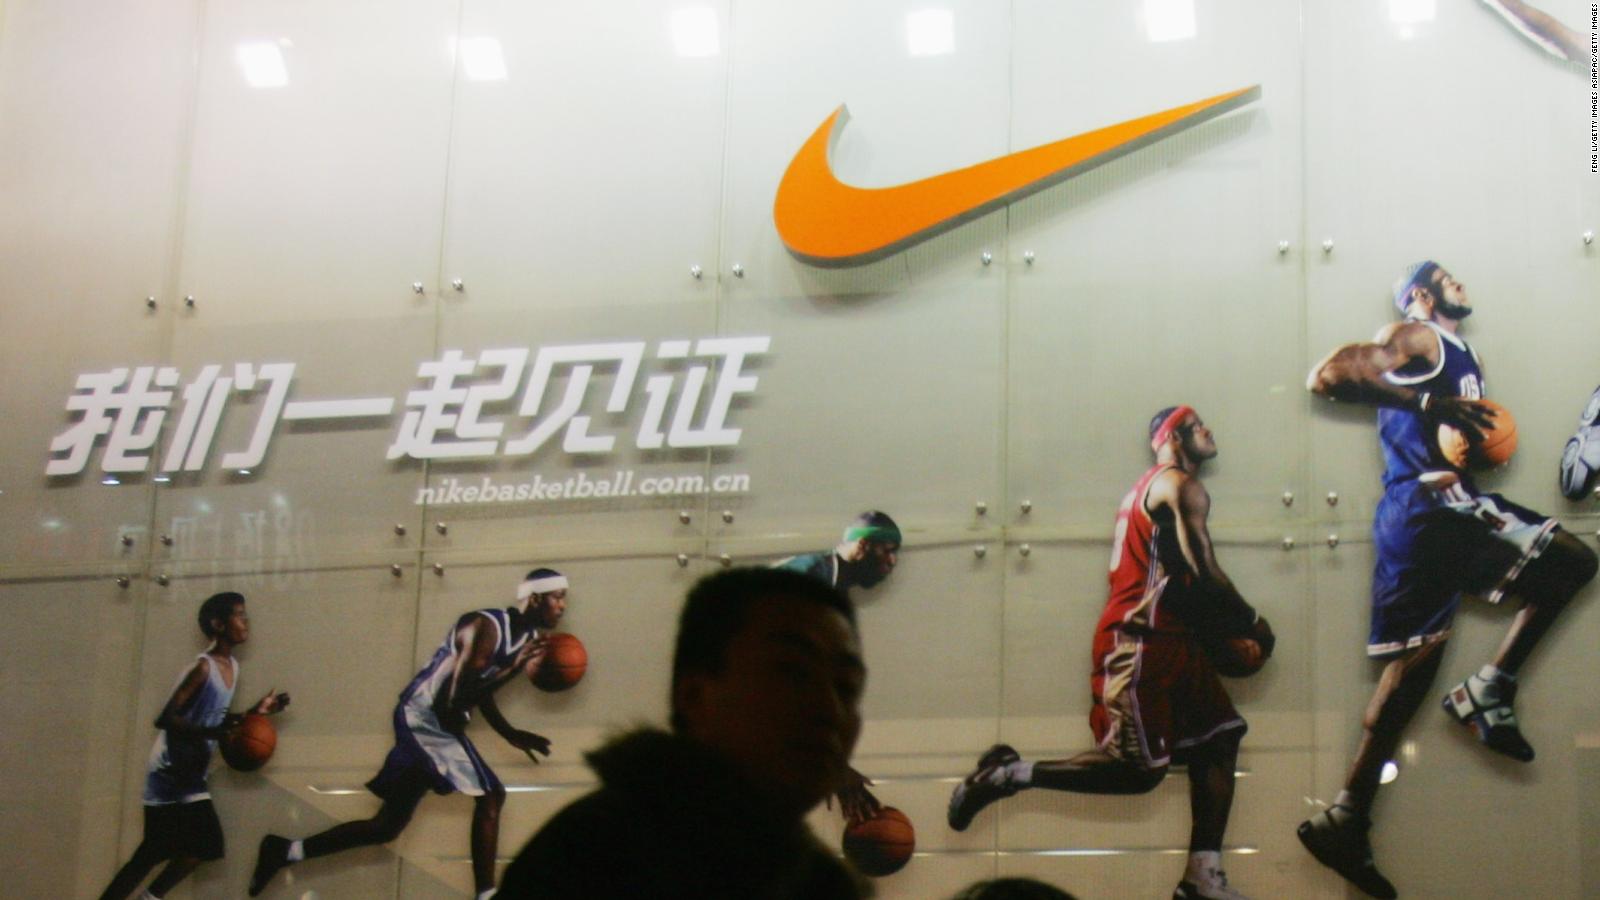 Teoría establecida Agotar George Hanbury Ganancias de Nike aumentan 25% impulsadas por ventas en China - CNN Video